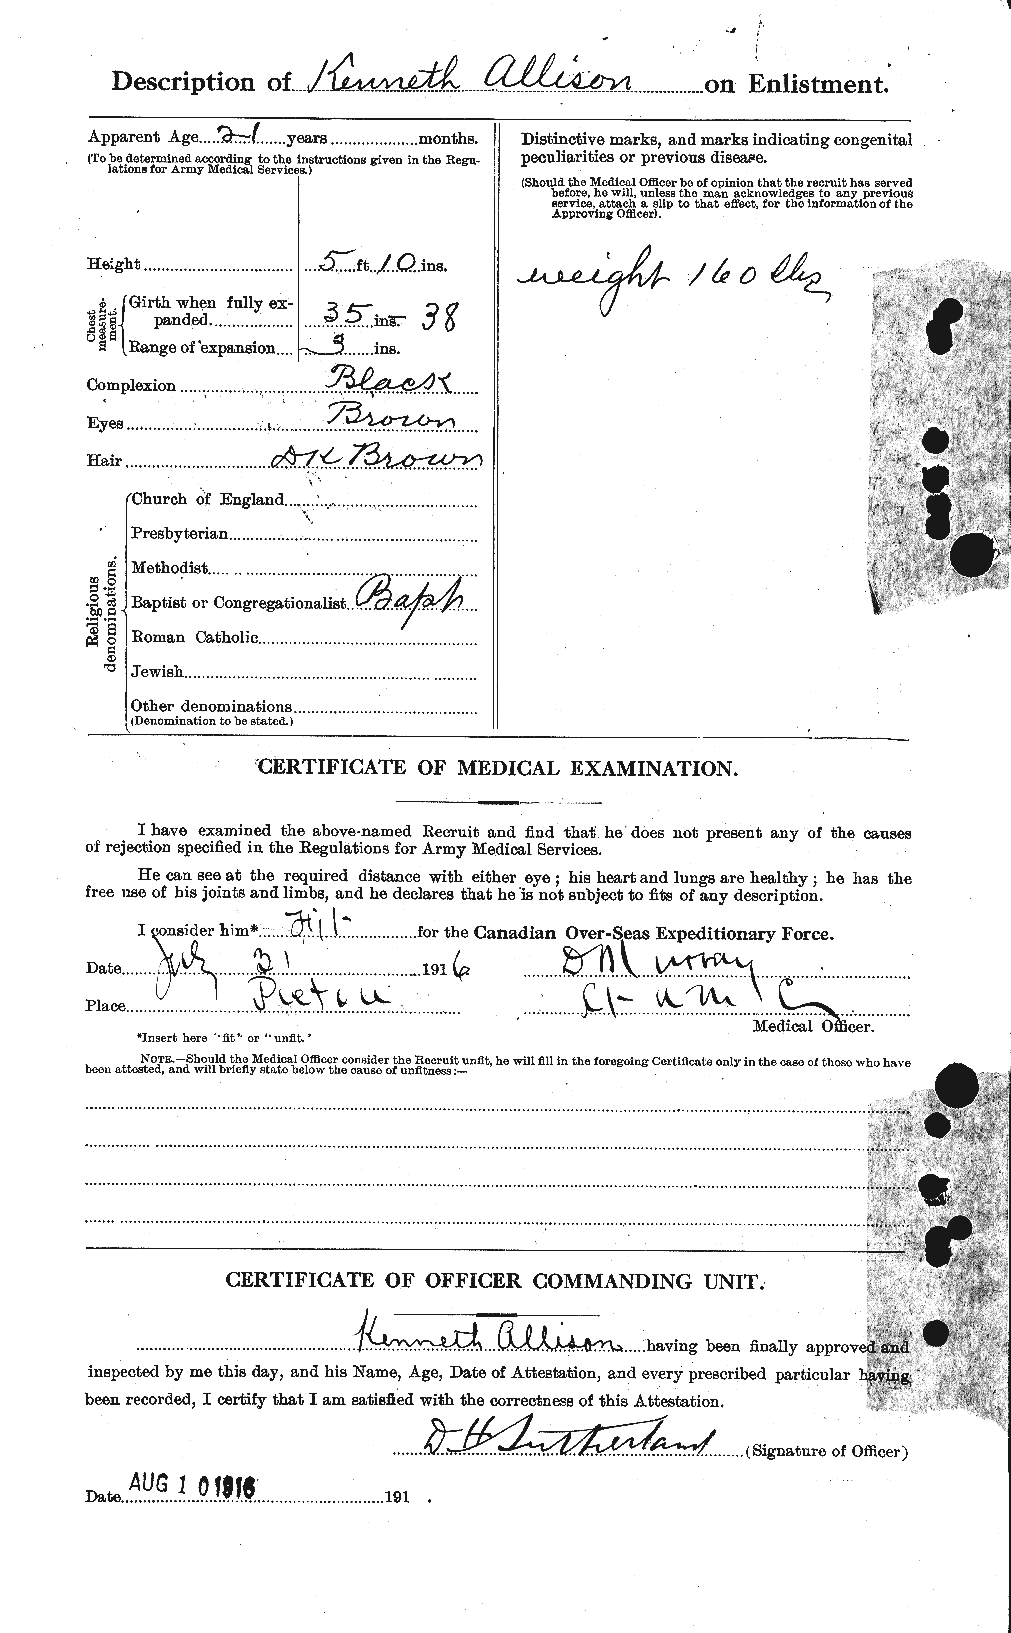 Dossiers du Personnel de la Première Guerre mondiale - CEC 208506b